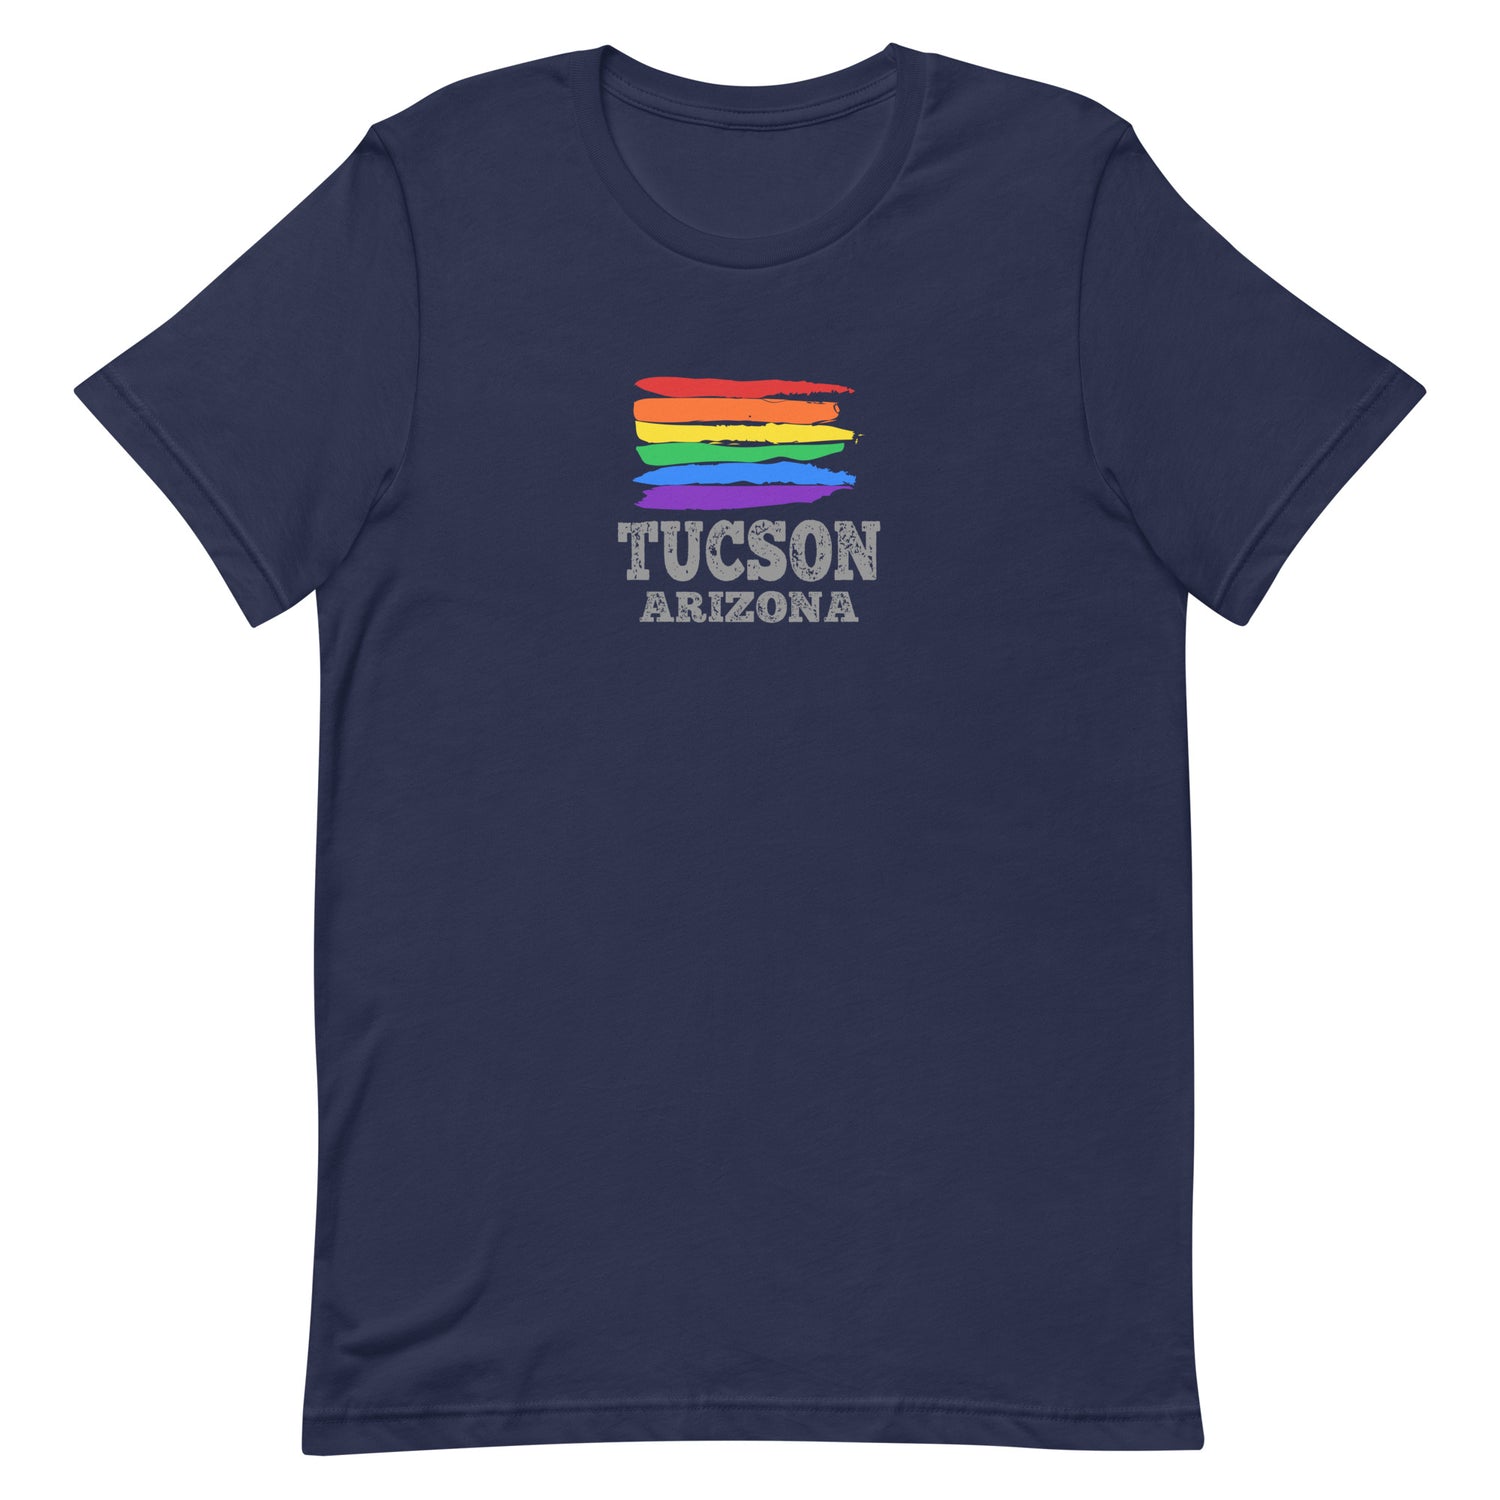 Tucson Arizona LGBTQ+ Gay Pride T-Shirt - gay pride apparel